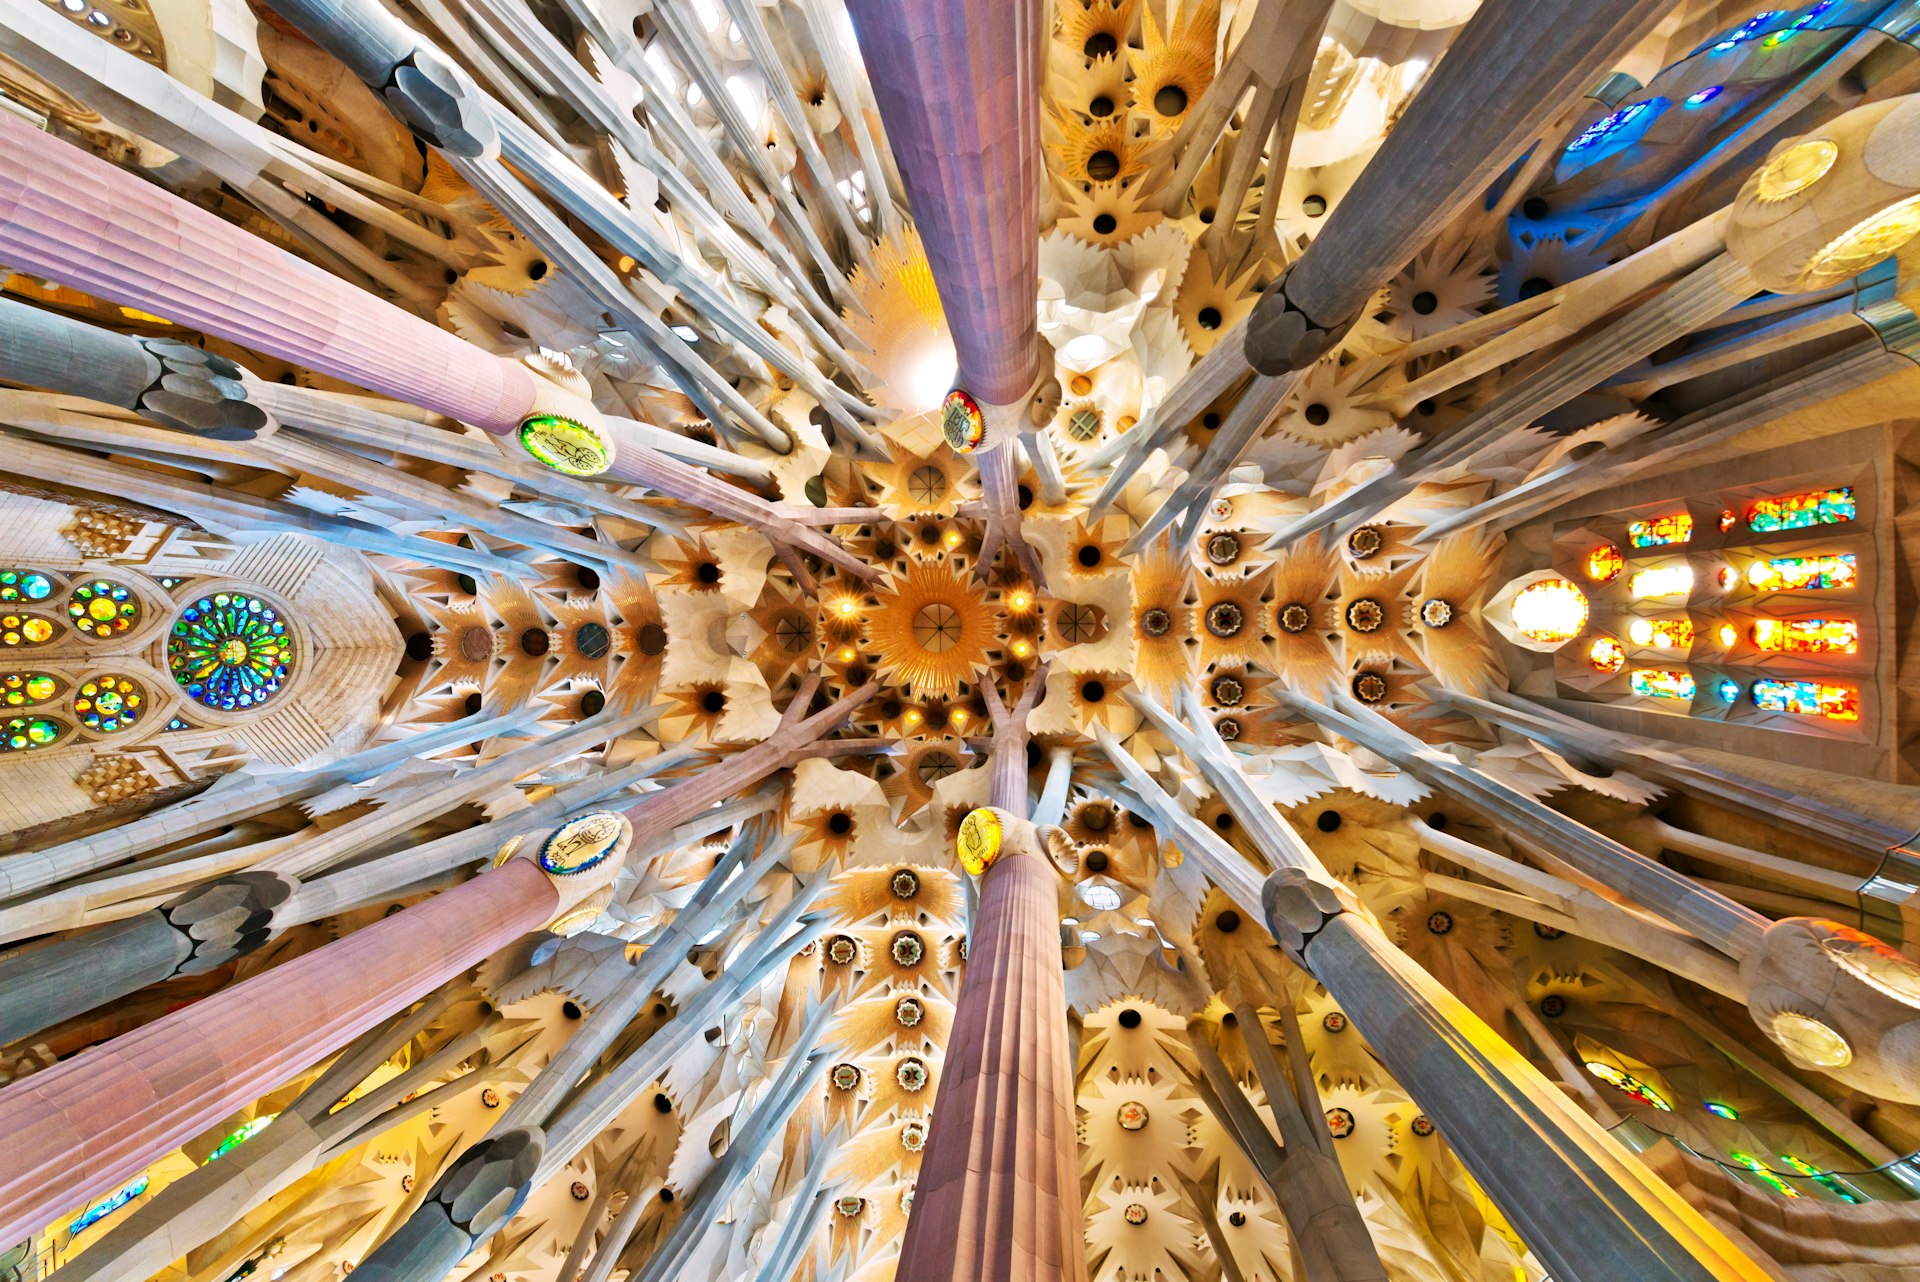 The church ceiling inside of La Sagrada Familia